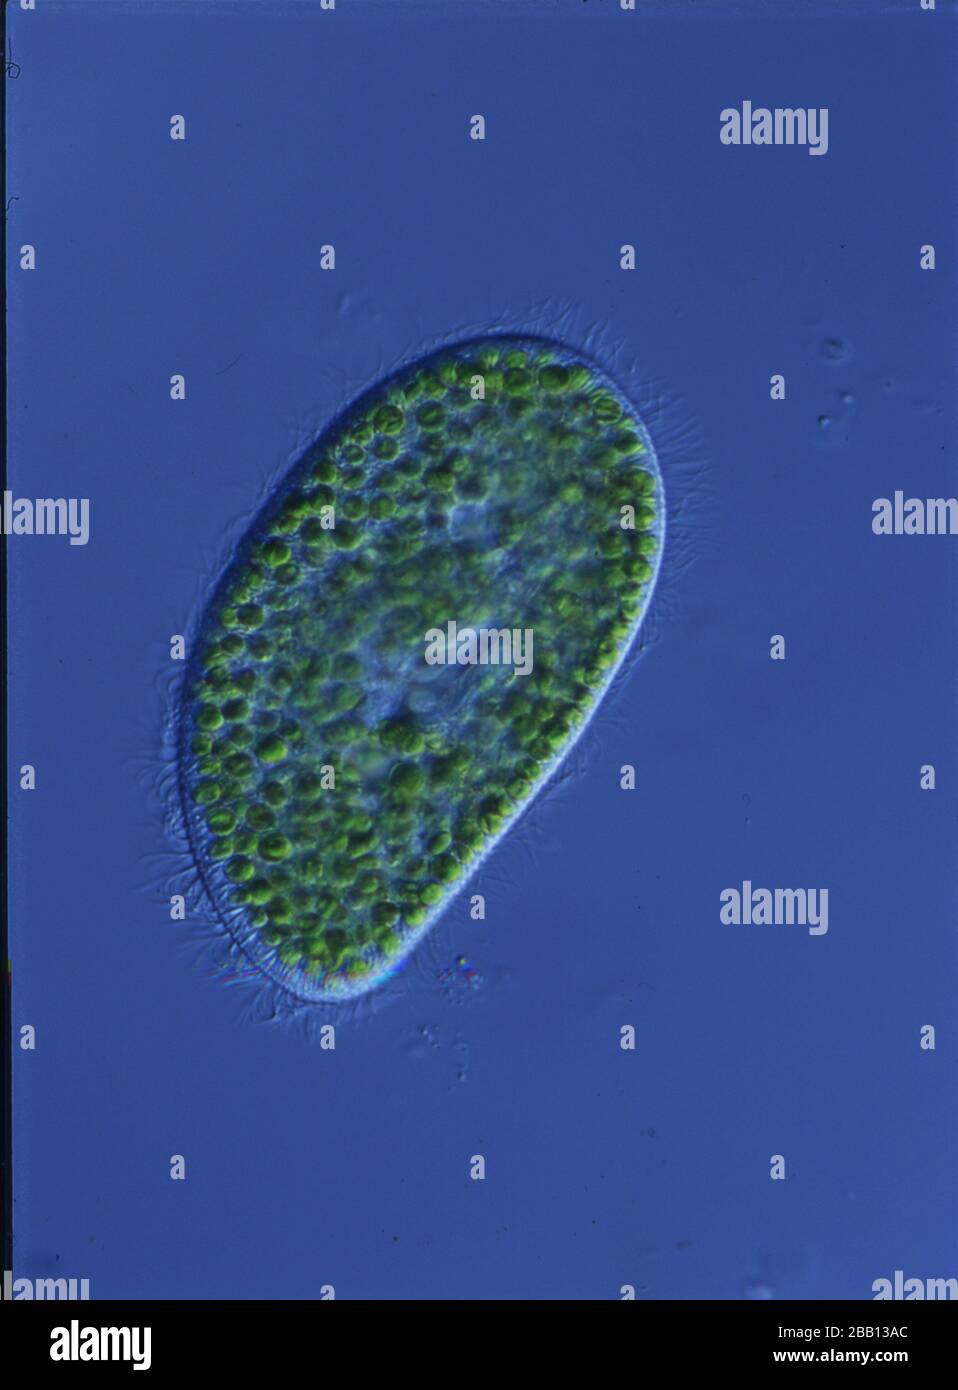 Grüner Slipper schwimmt im Wasser unter dem Mikroskop Stockfotografie -  Alamy